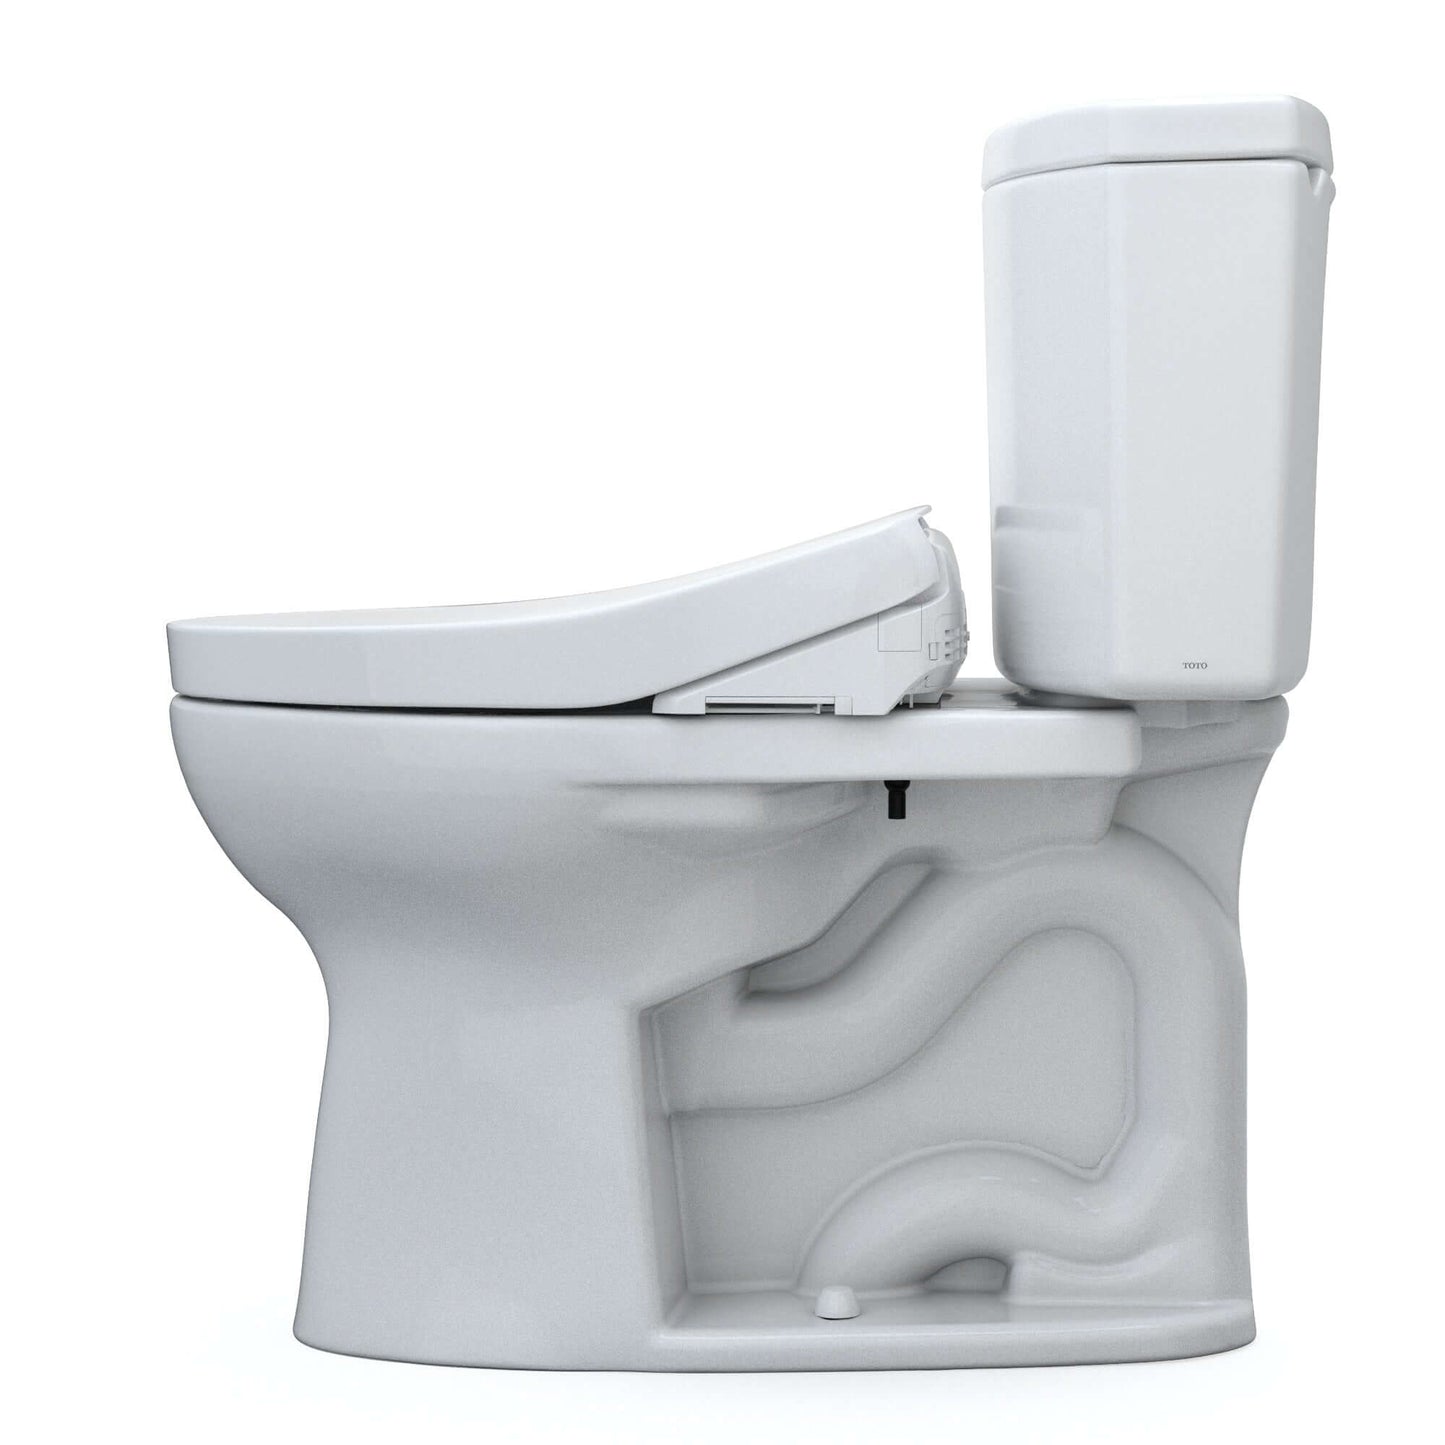 TOTO WASHLET+ Drake II Two-Piece 1.28 GPF Universal Height Toilet S550e Contemporary Bidet Seat, Cotton White - MW4543056CEFG(A)#01